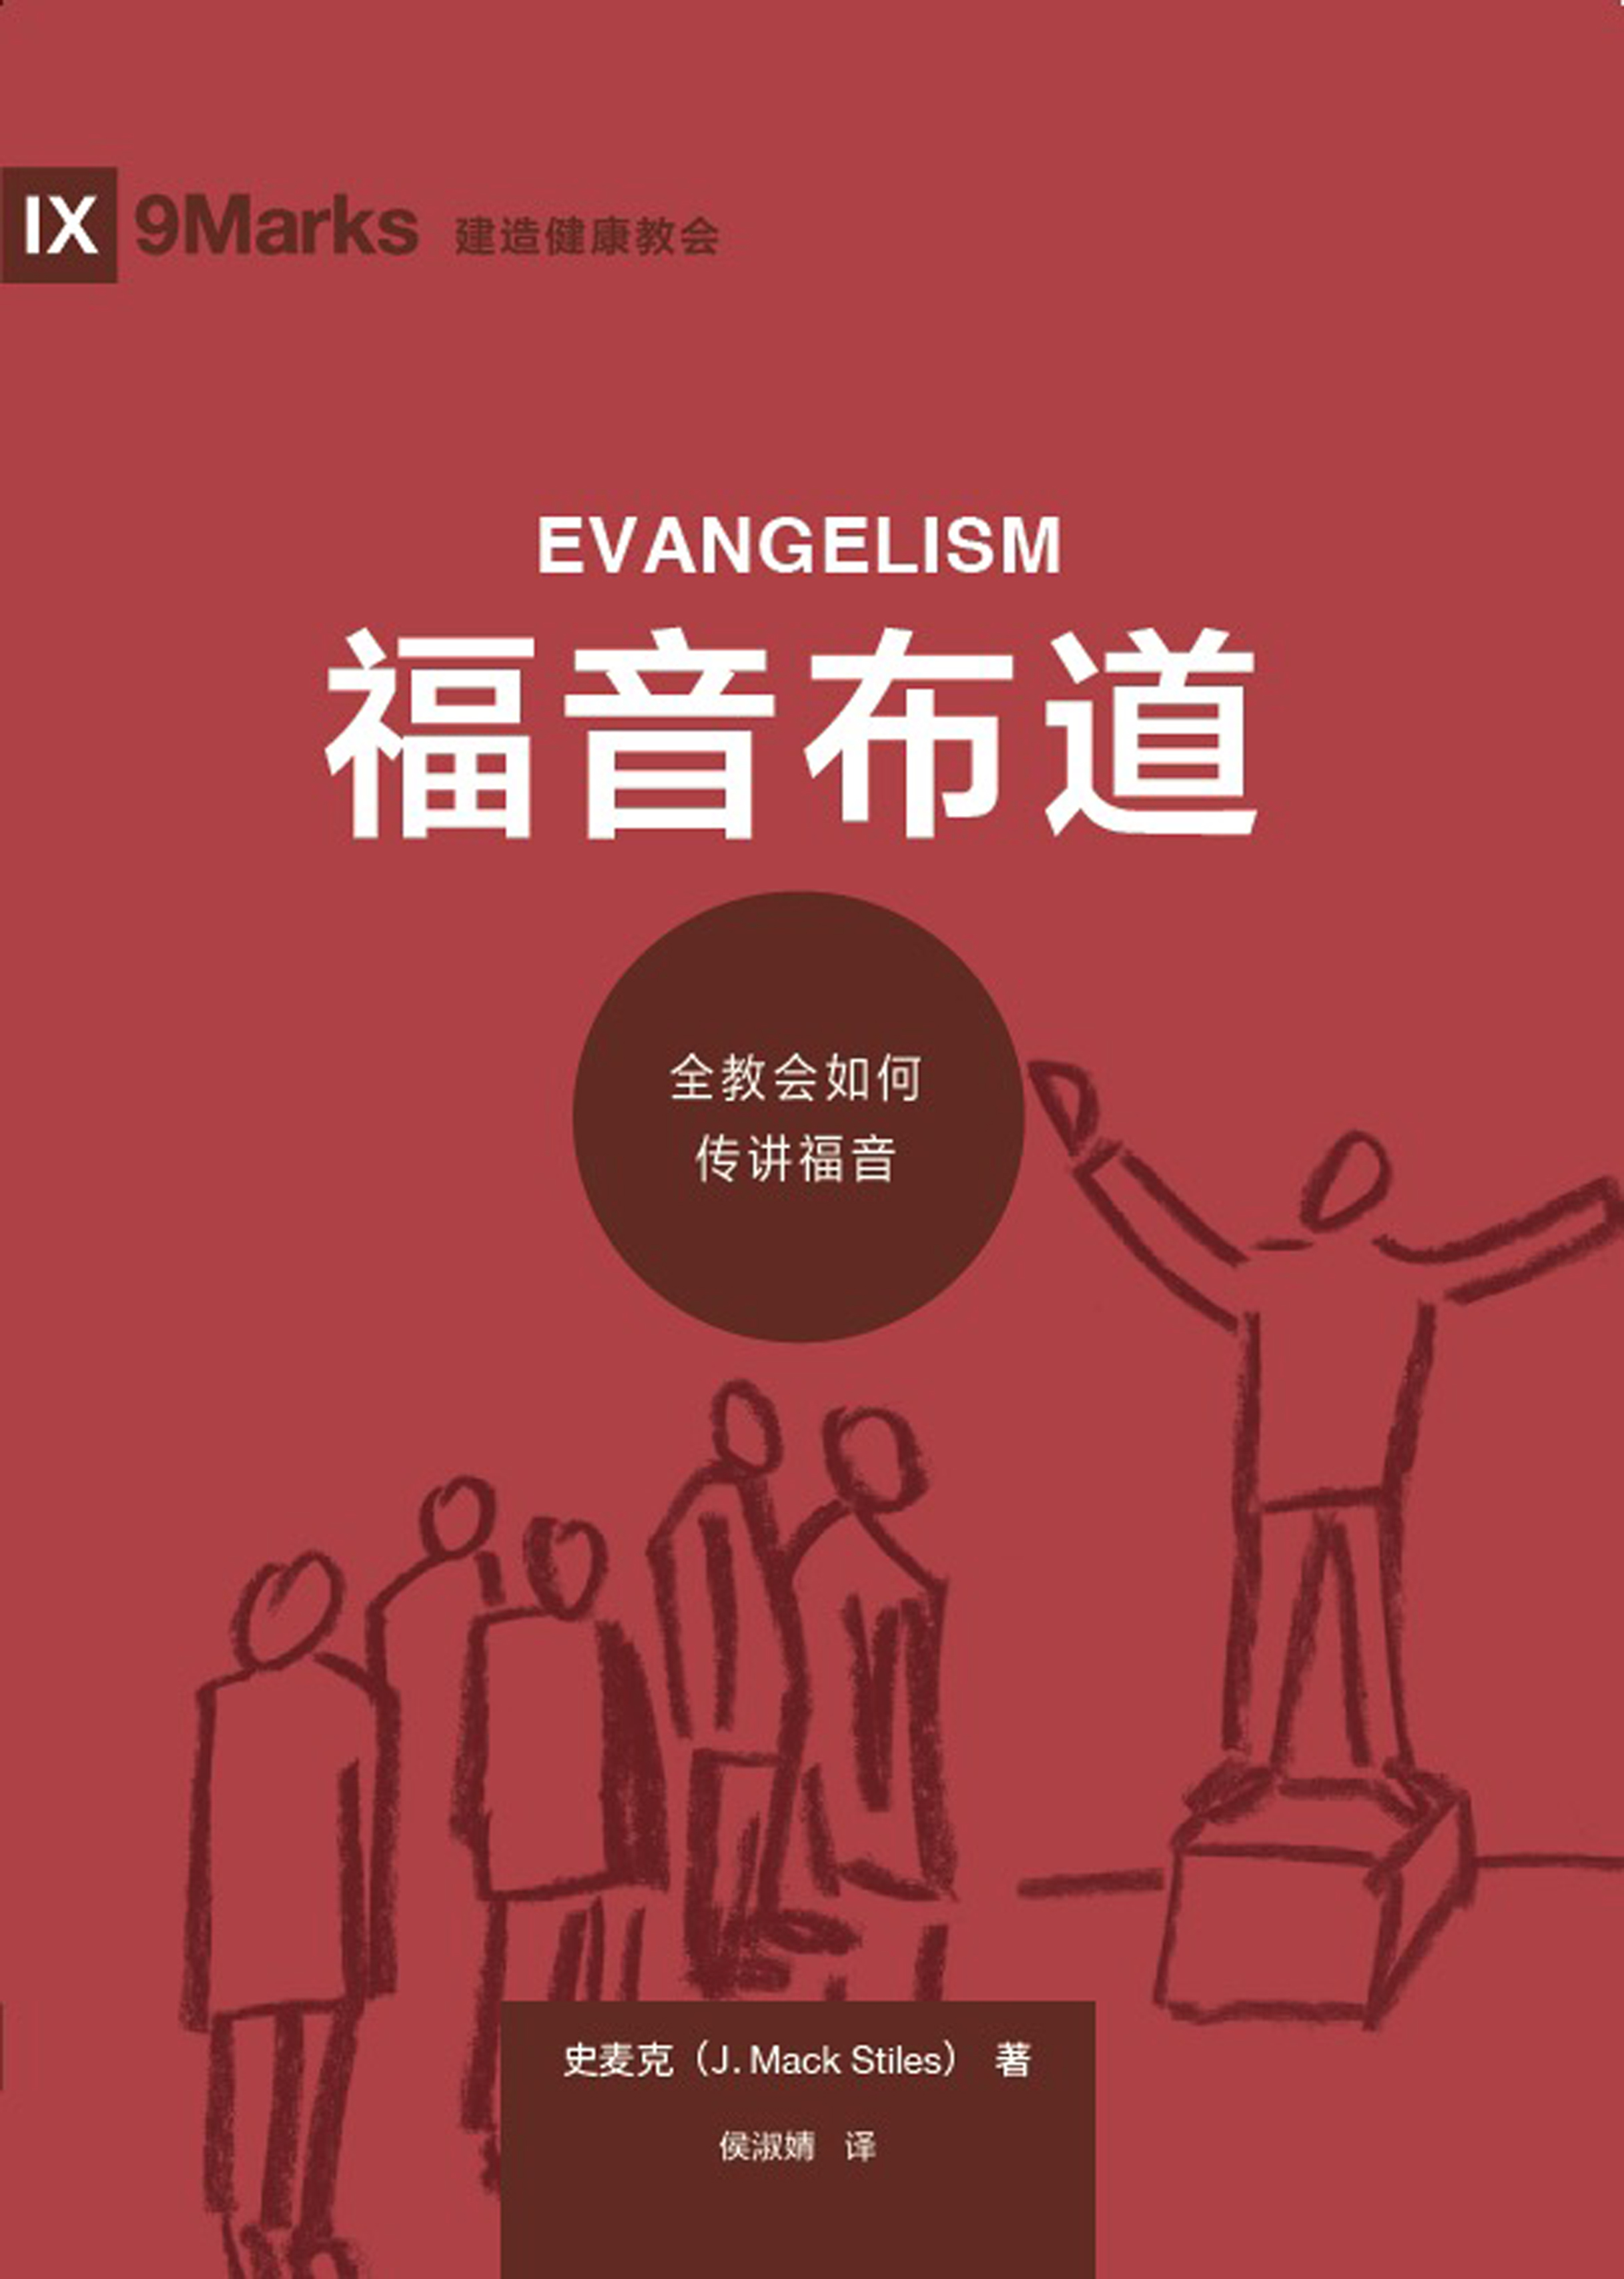 积极传福音 | 房角石教会 Cornerstone Mandarin Congregation | 华文教会 Chinese Church